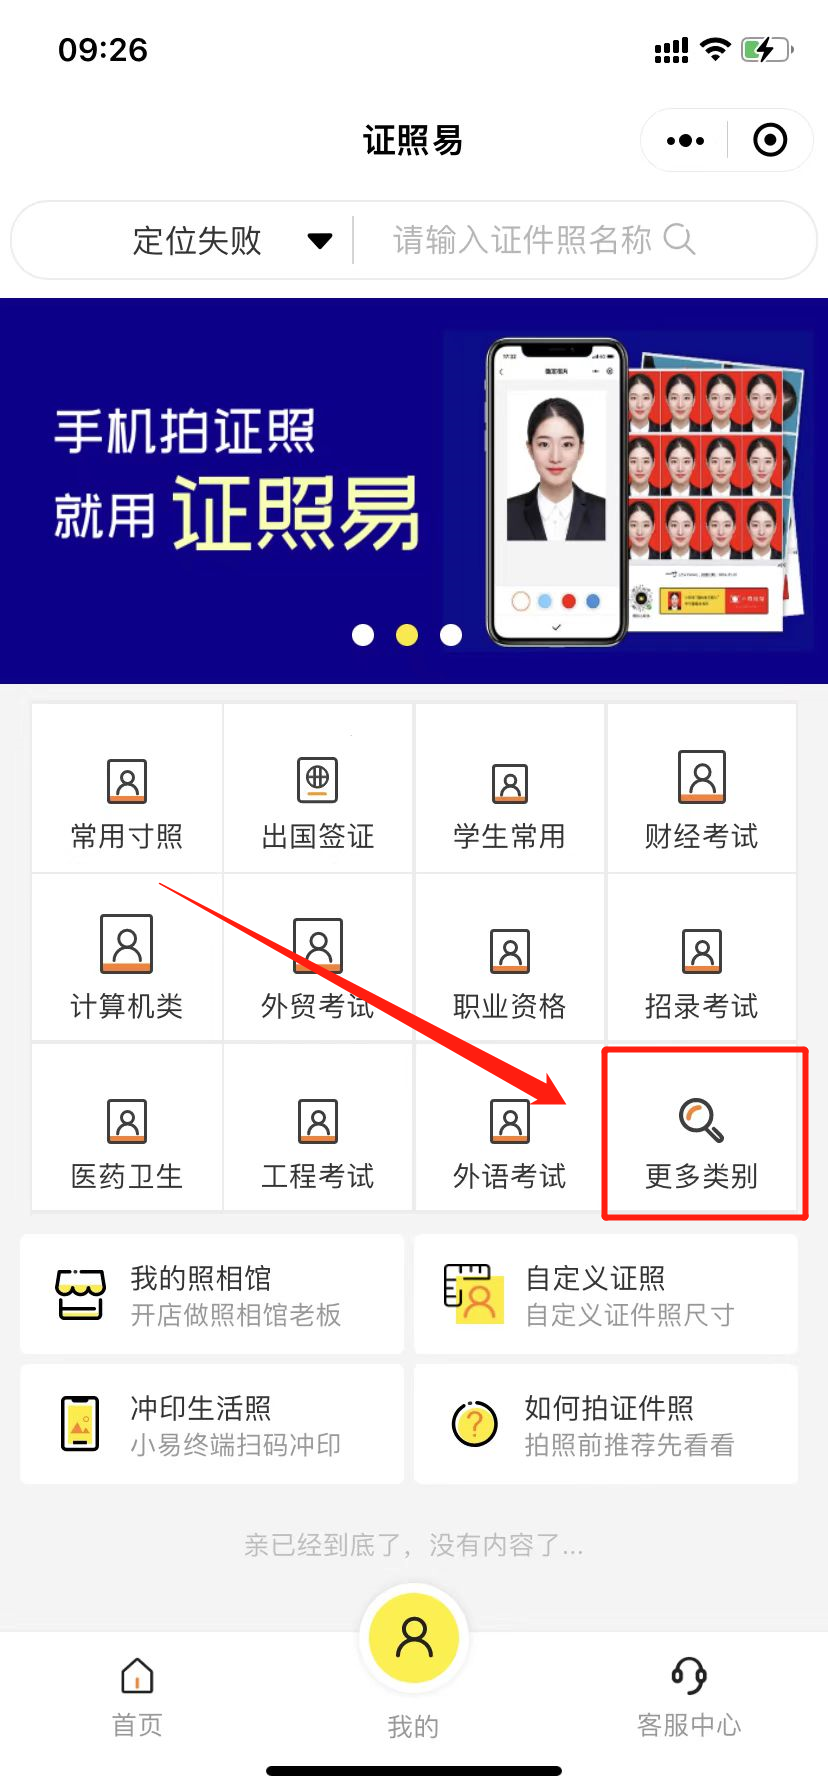 深圳社保卡照片手机拍摄入口和流程